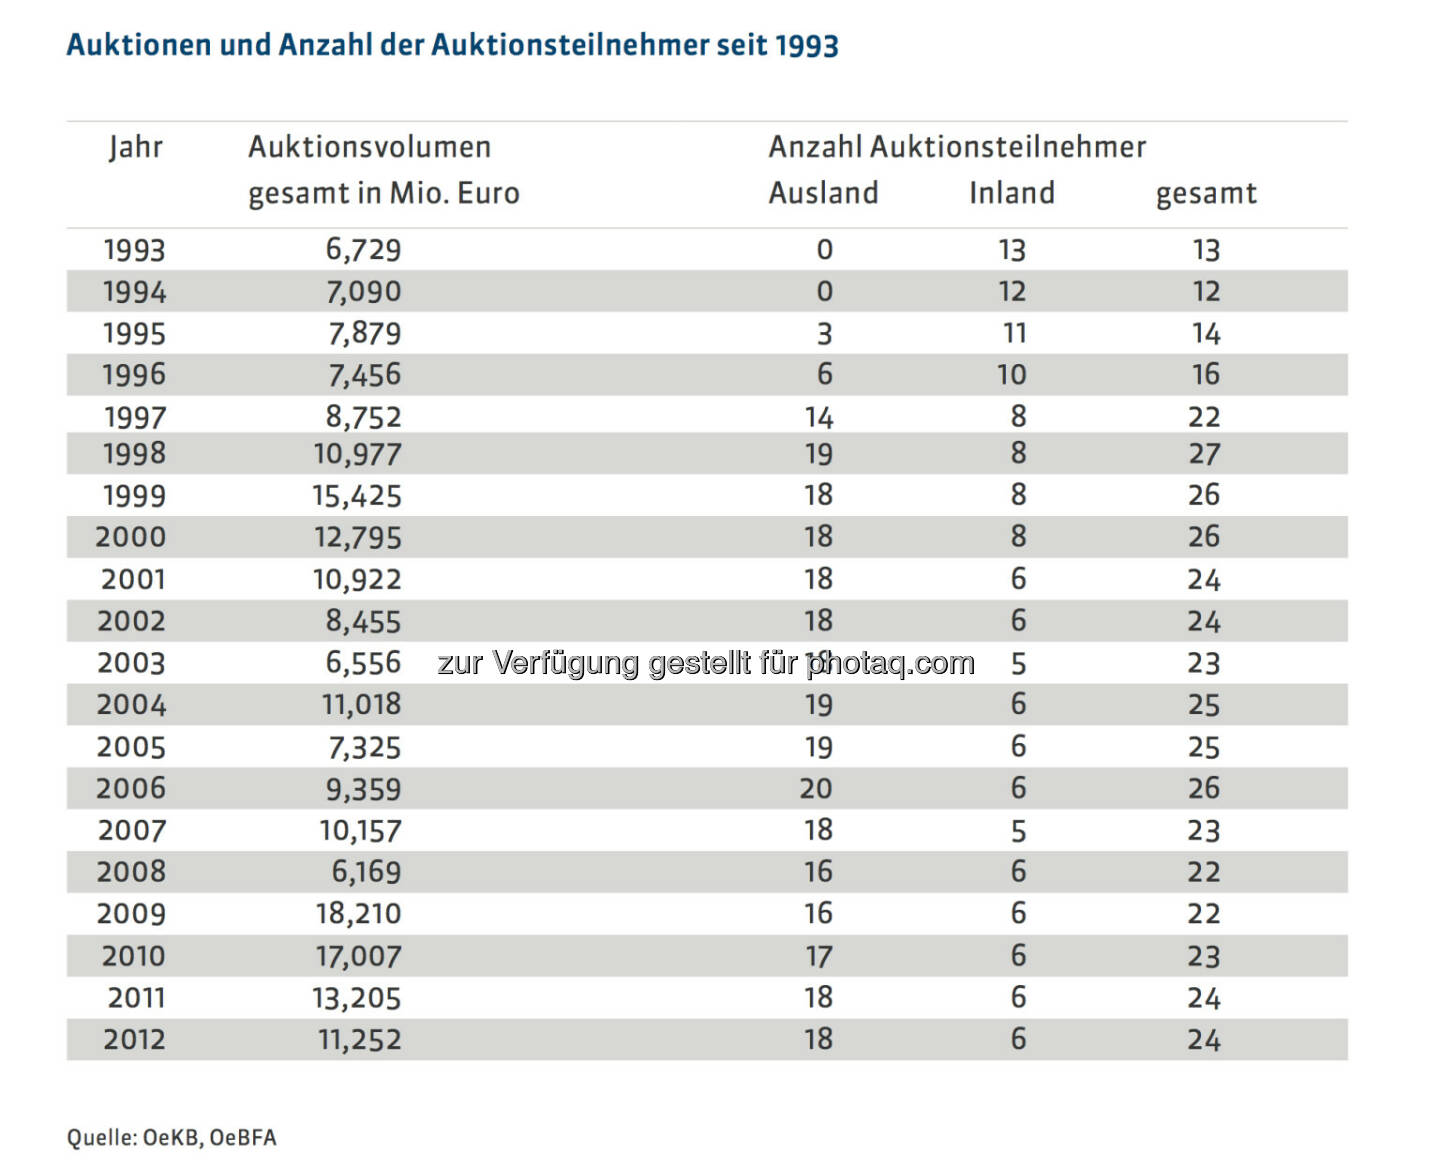 20 Jahre Österreichische Bundesfinanzierungsagentur: Auktionen und Anzahl der Auktionsteilnehmer seit 1993, mehr unter http://www.oebfa.at/de/osn/DownloadCenter/Die%20OeBFA/OeBFA_Geschichte_web.pdf